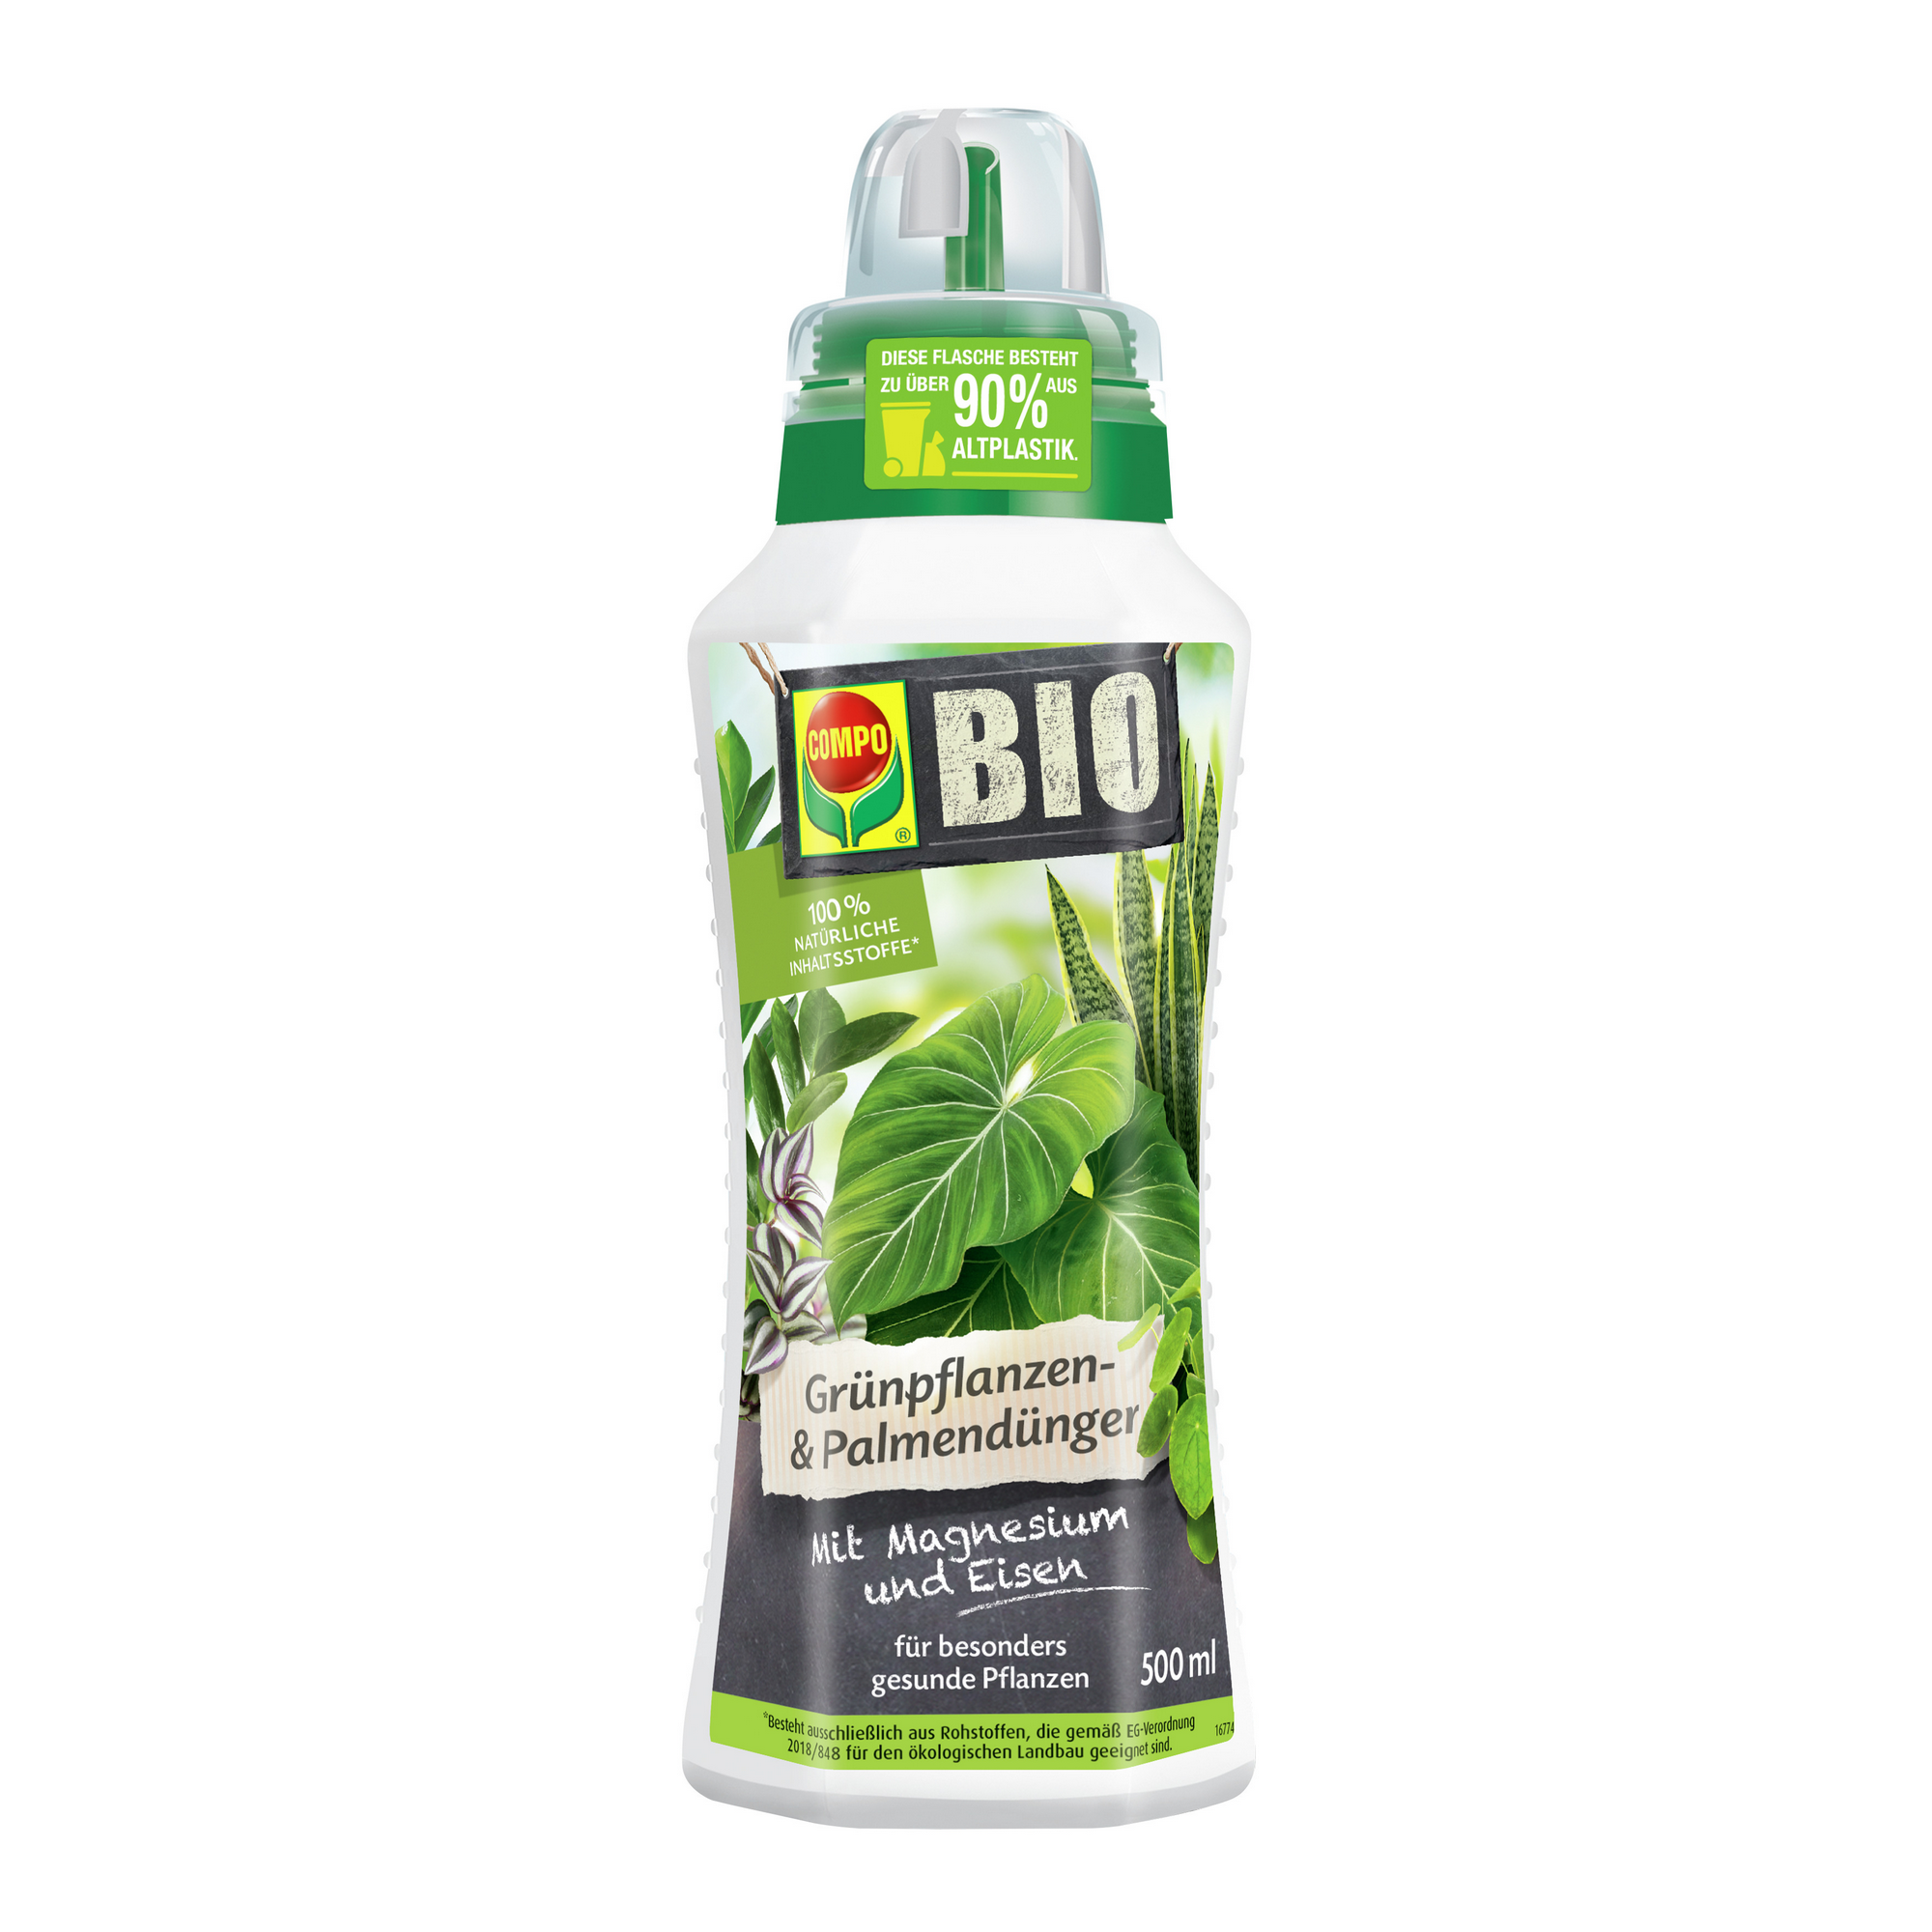 BIO-Grünpflanzen- und Palmendünger 500 ml + product picture